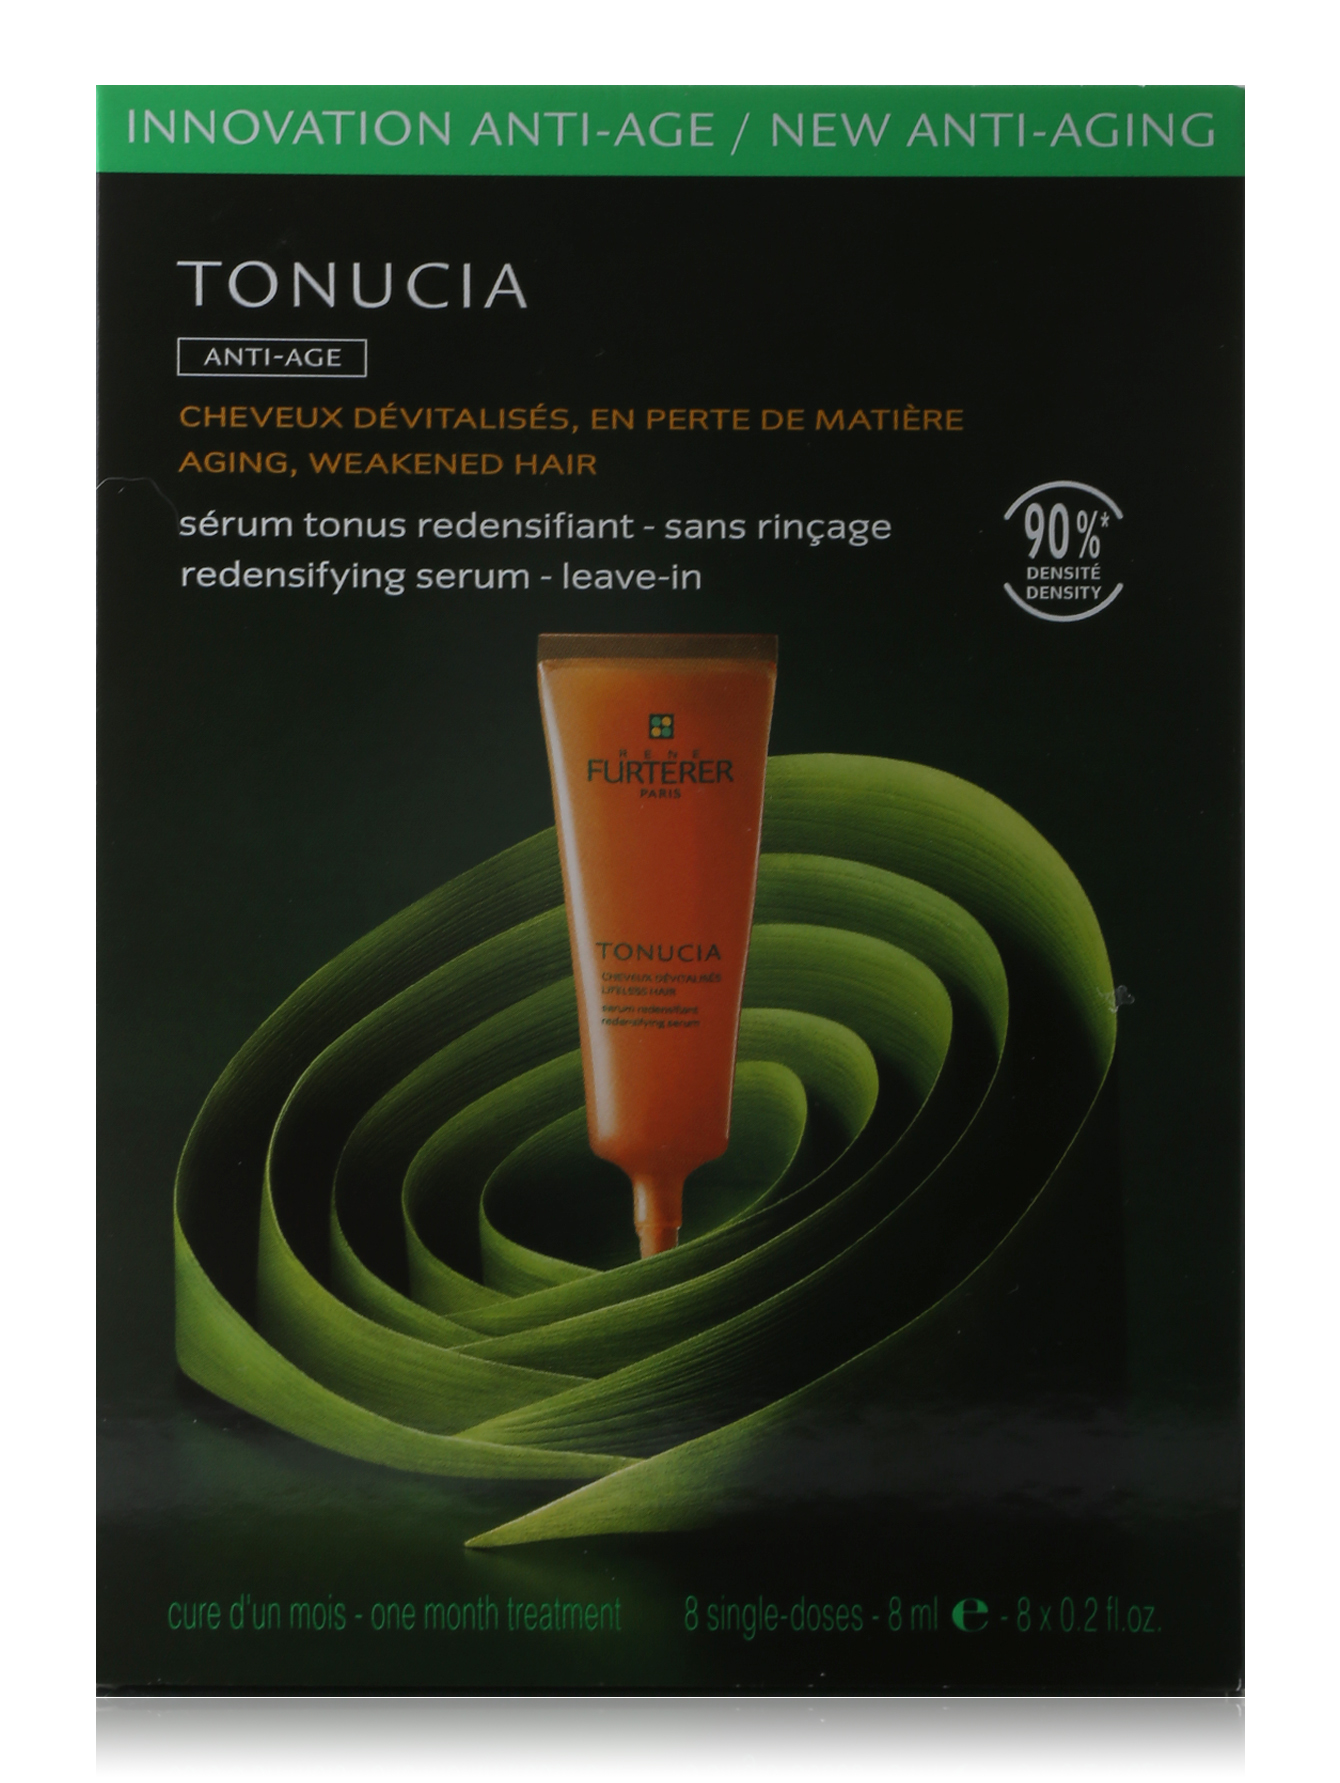  Сыворотка для плотности волос - Tonucia, 8x8ml. - Обтравка1